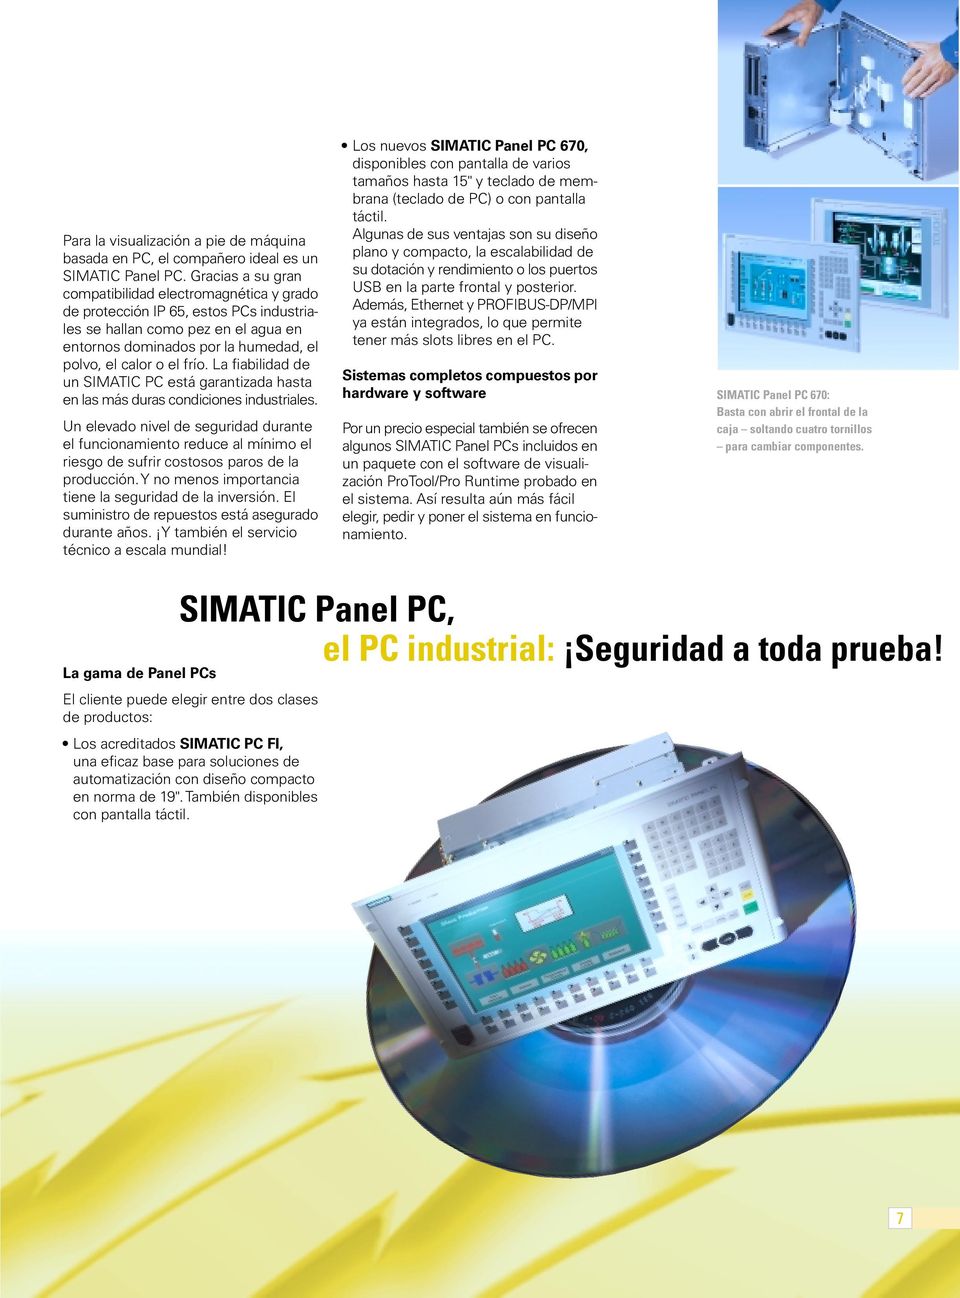 La fiabilidad de un SIMATIC PC está garantizada hasta en las más duras condiciones industriales.